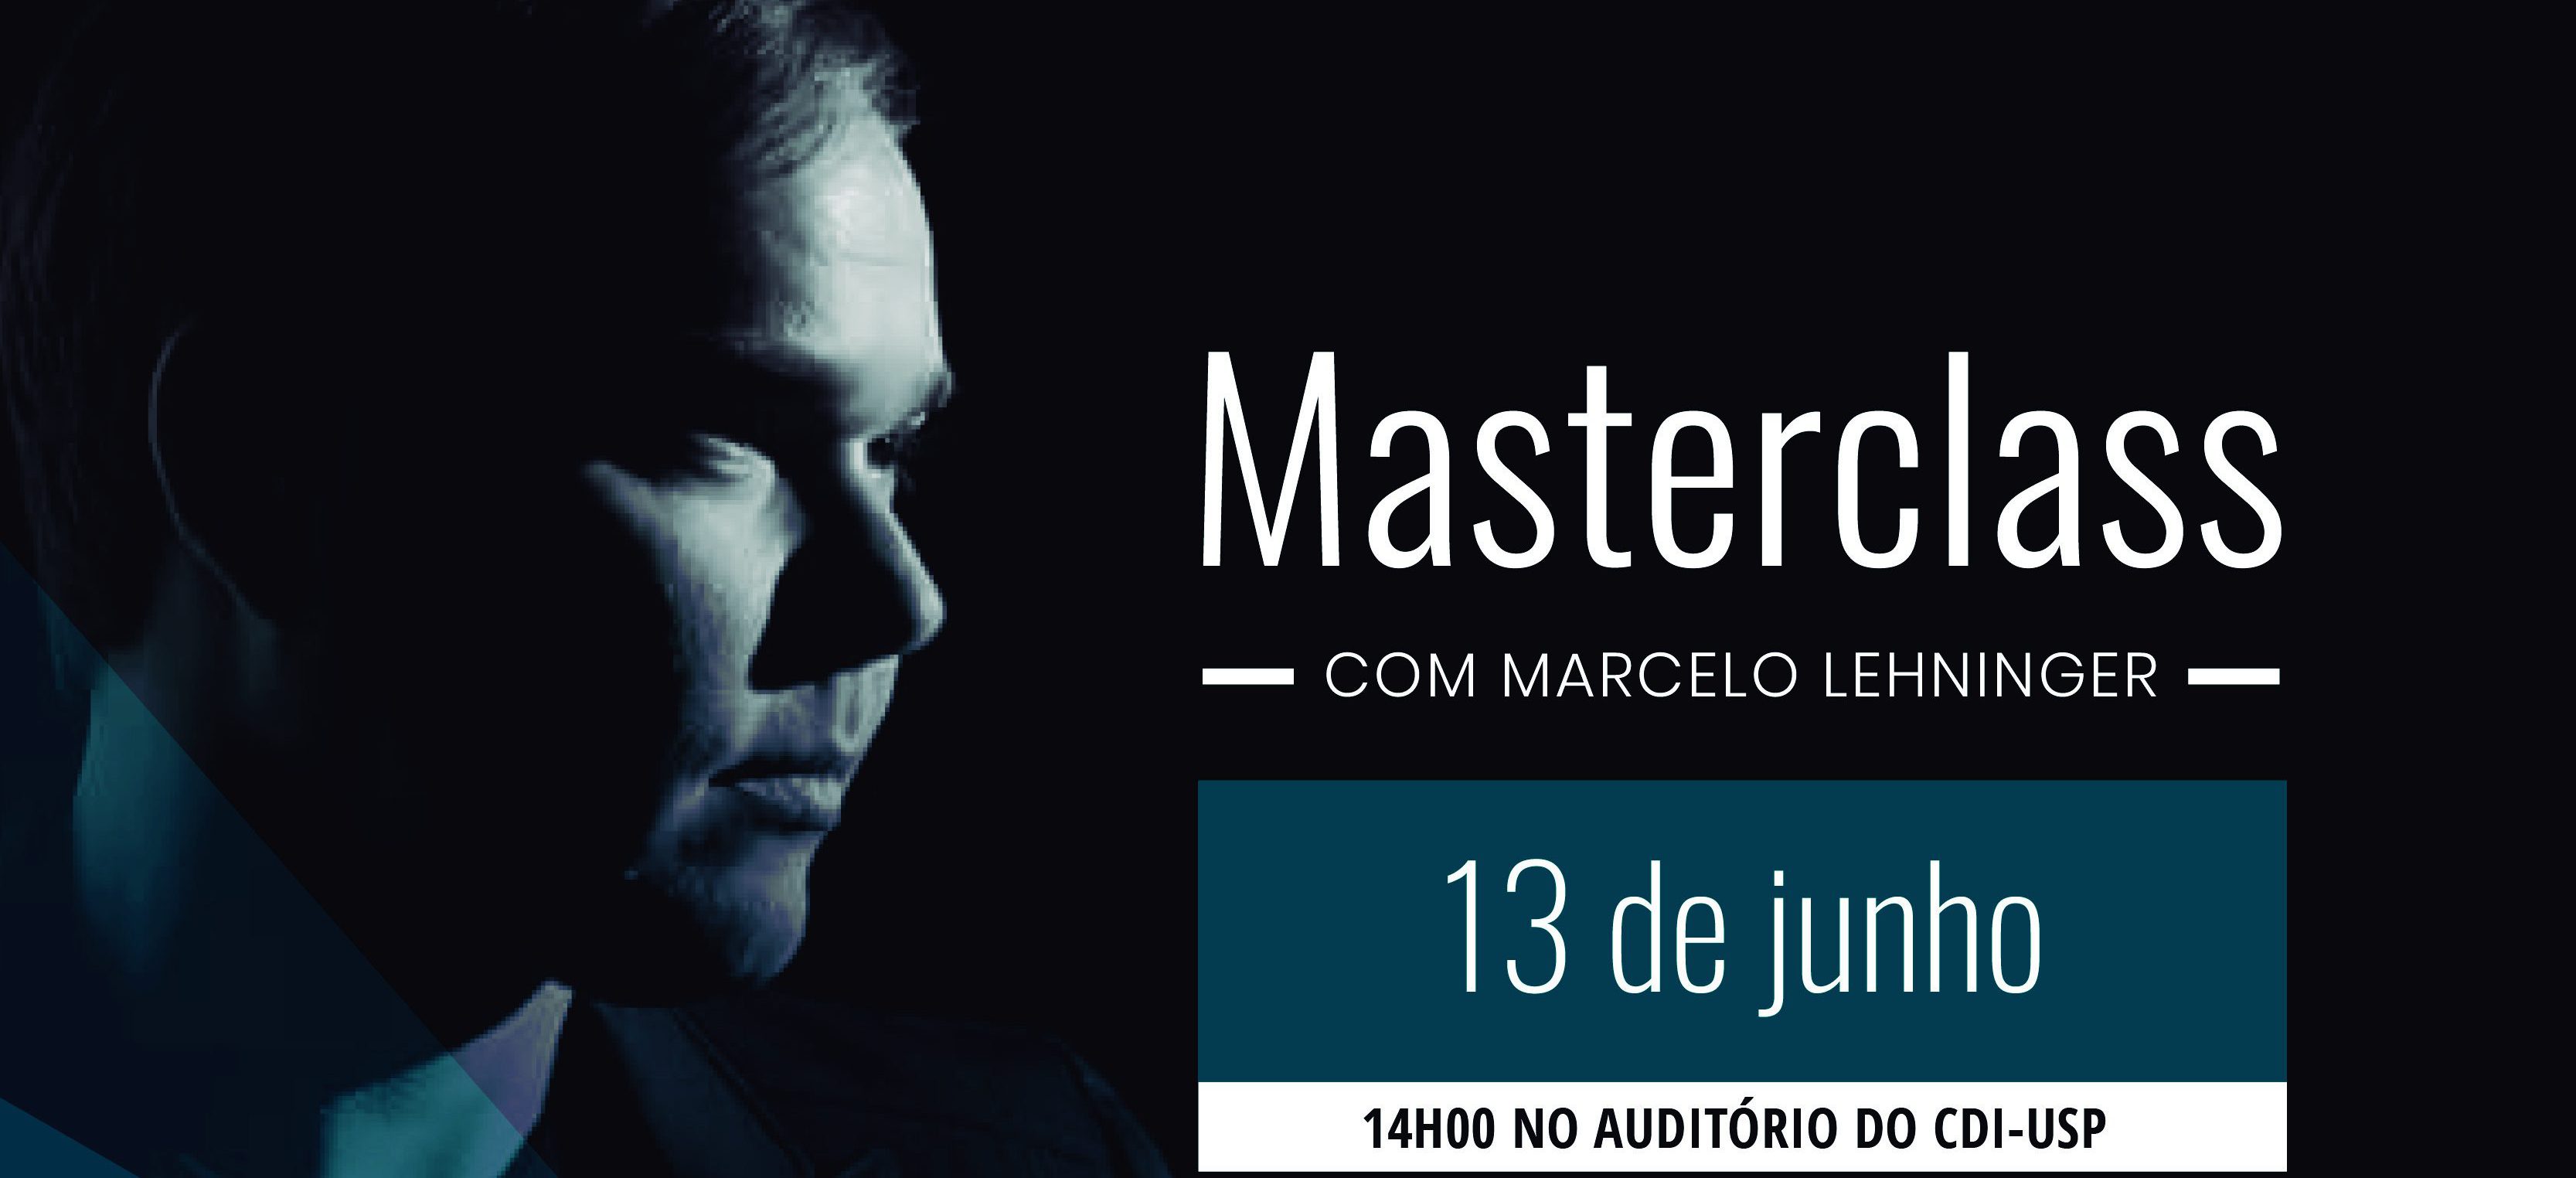 Masterclass em regência da Osusp traz maestro Marcelo Lehninger para São Paulo